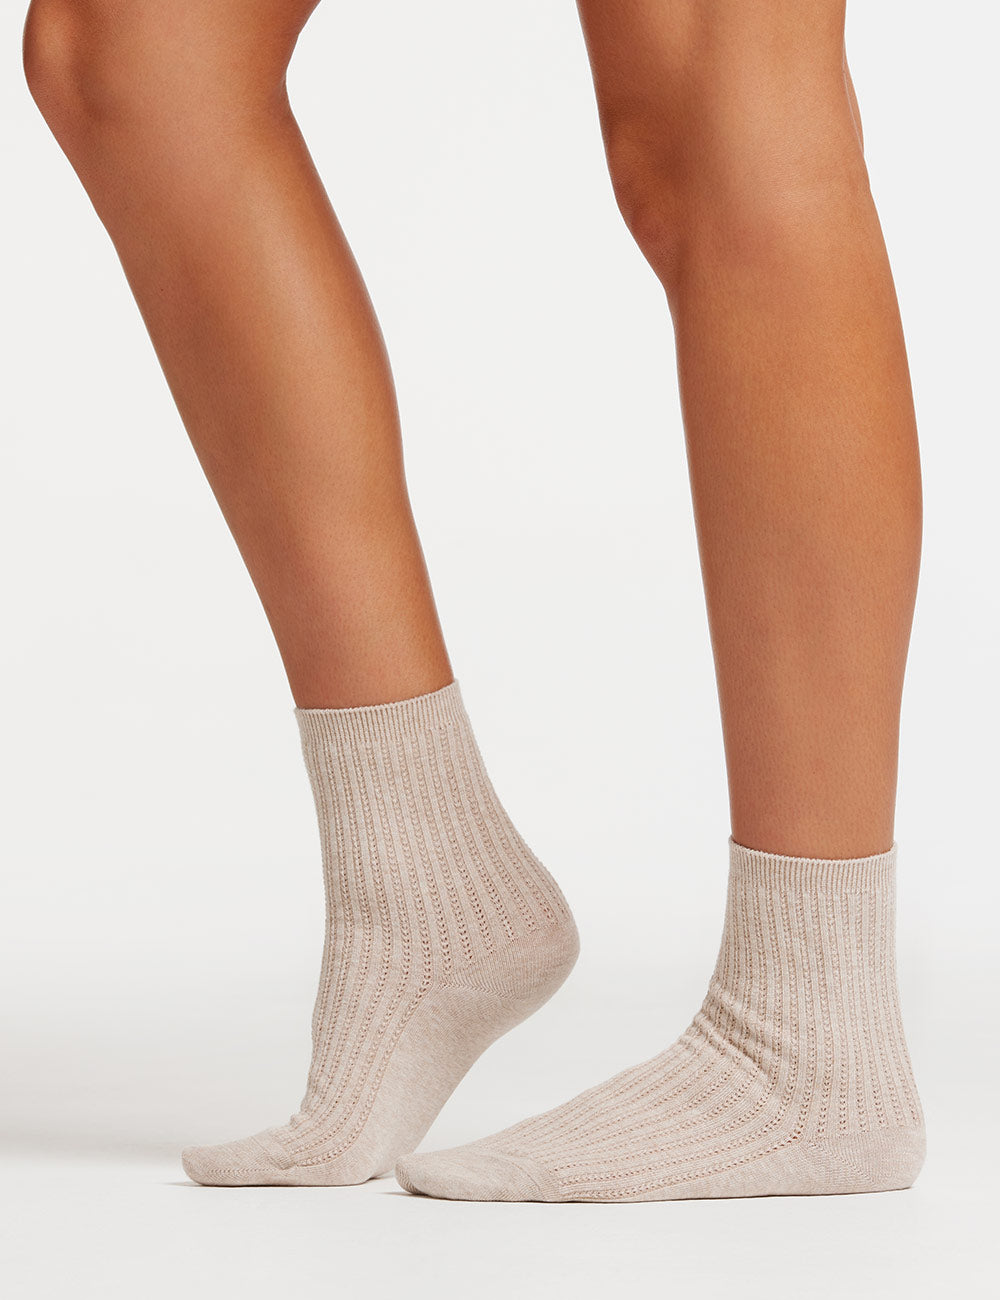 Womens organic cotton socks ambra